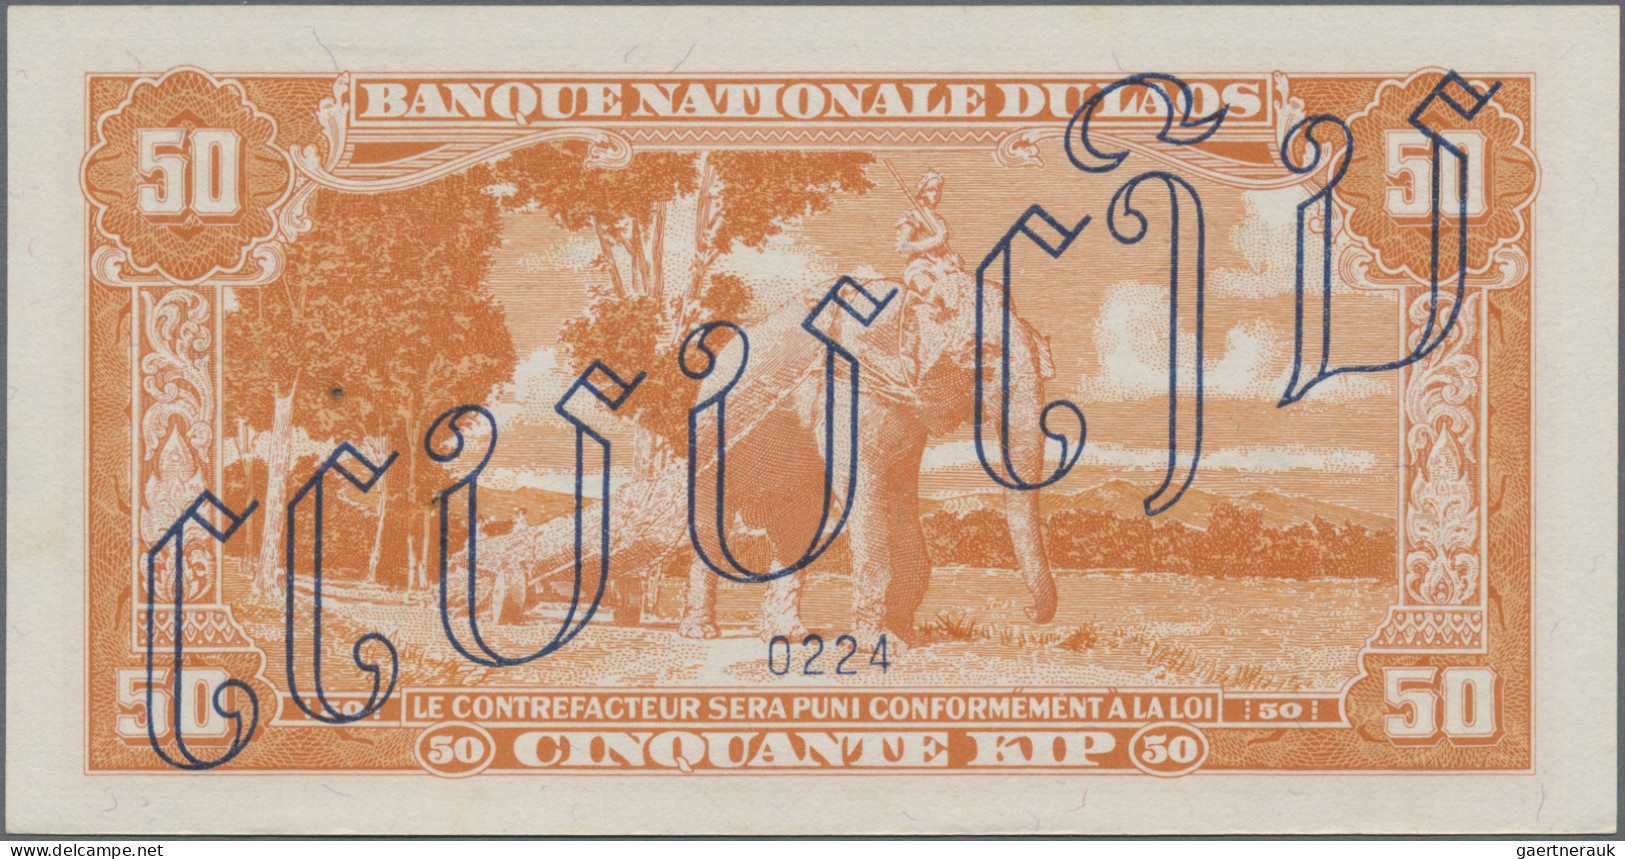 Laos: Banque Nationale Du Laos, 50 Kip ND(1957) SPECIMEN, P.5s2, Tiny Rusty Pinh - Laos